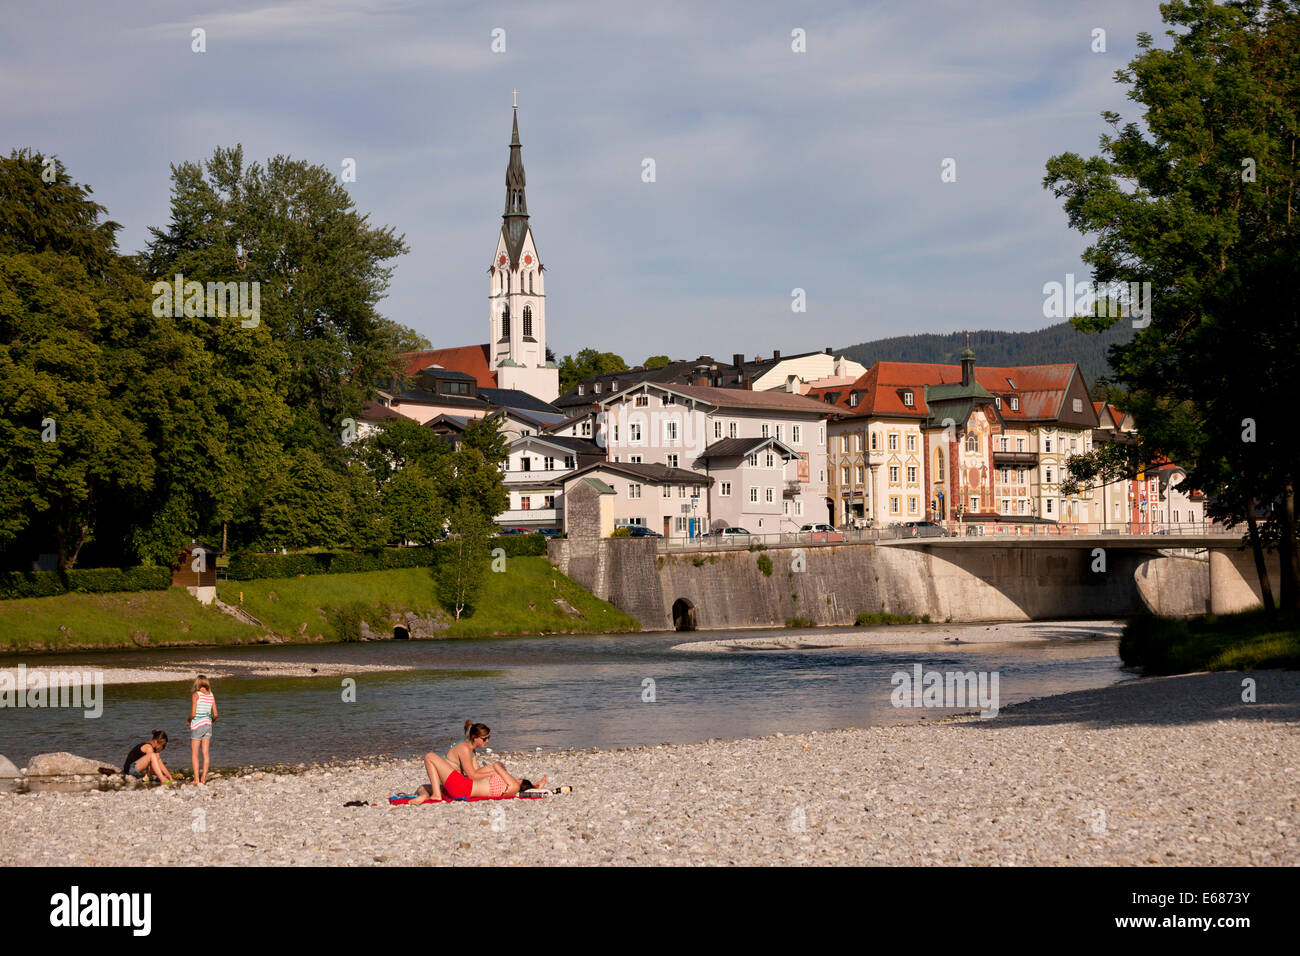 Stadt Bad Tölz mit Pfarrkirche Mariä Himmelfahrt / Mariä Himmelfahrt und dem Fluss Isar, Bayern, Deutschland, Europa Stockfoto